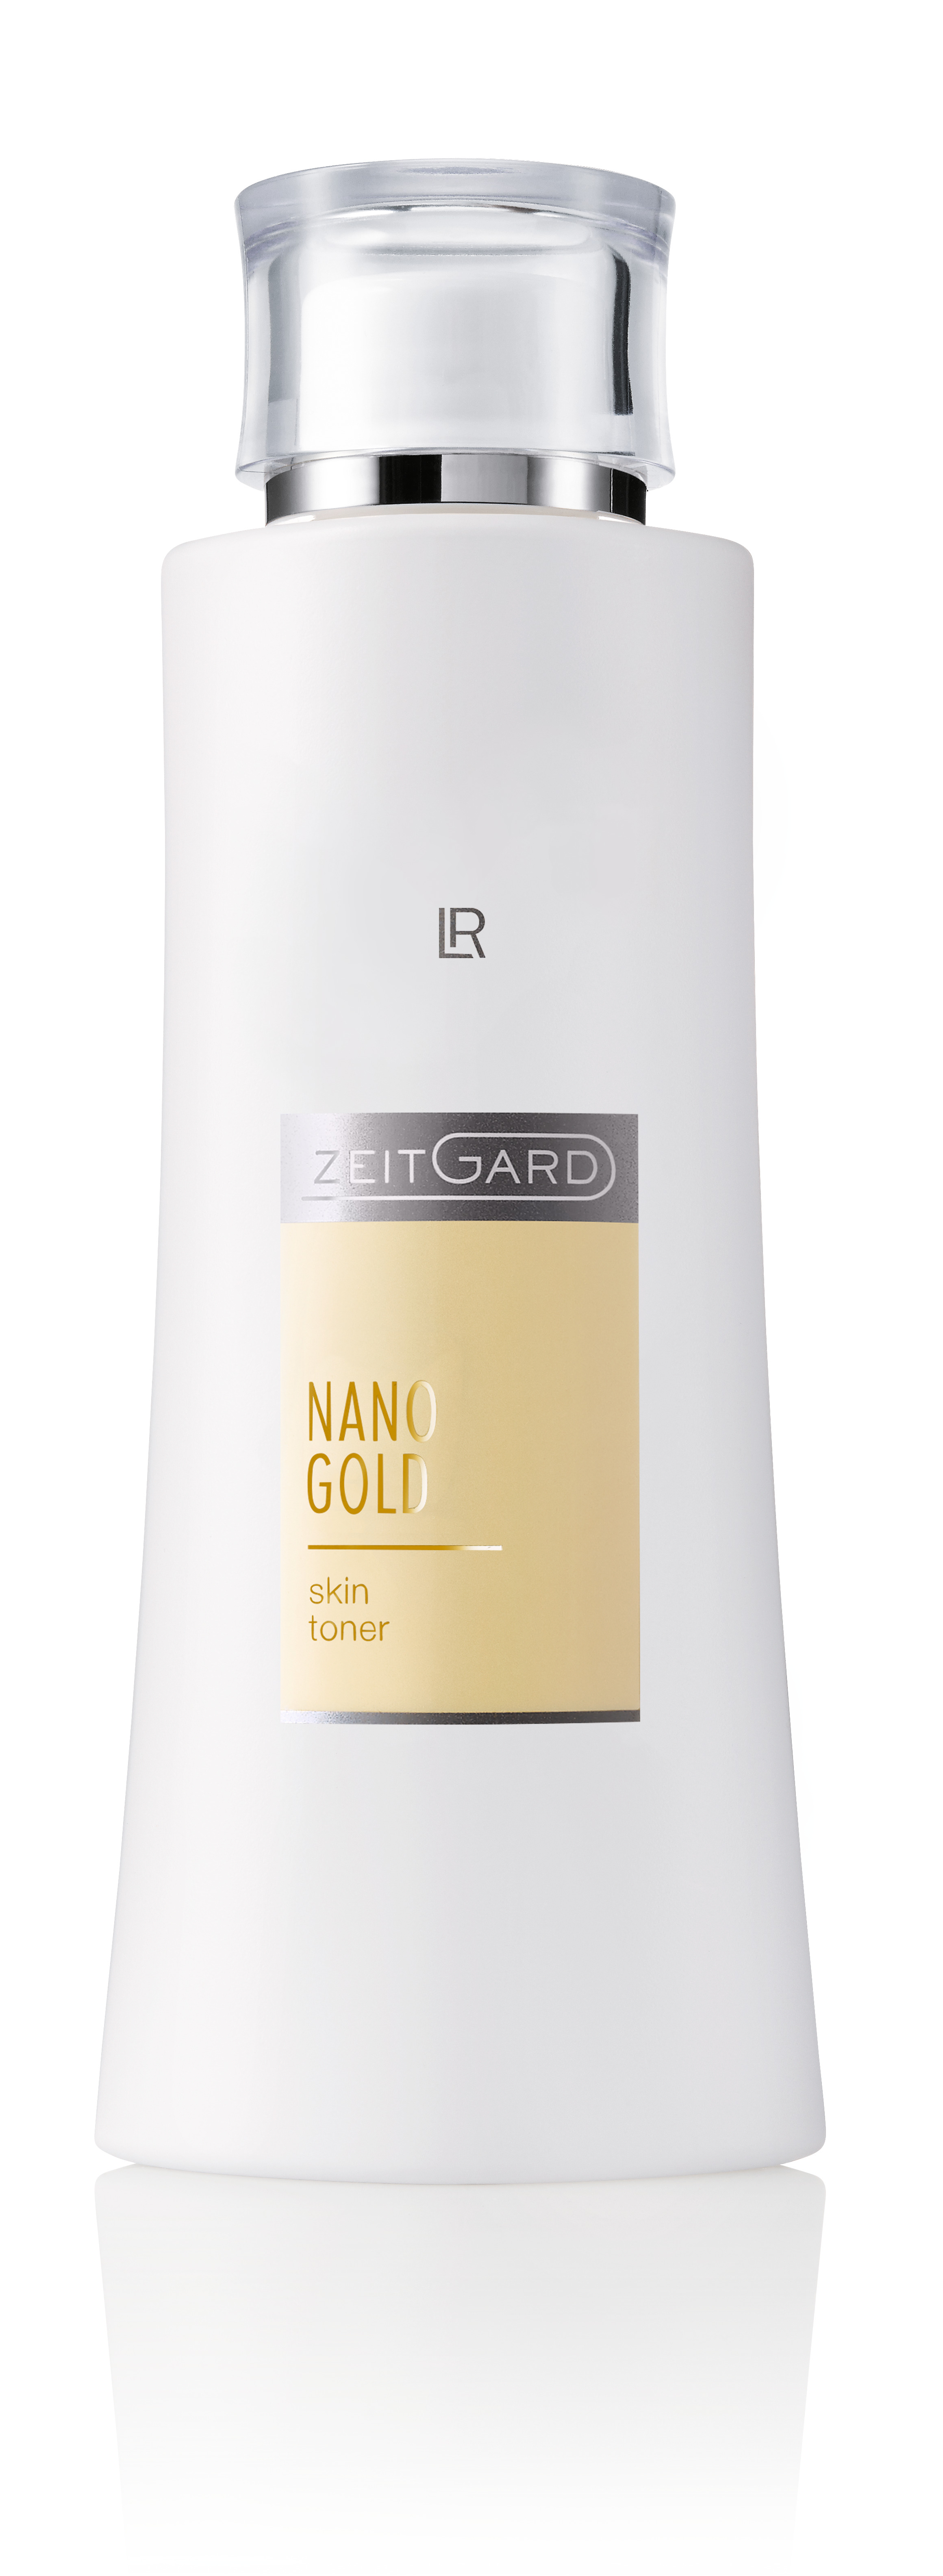 LR Zeitgard Nano Gold Gezichtslotion